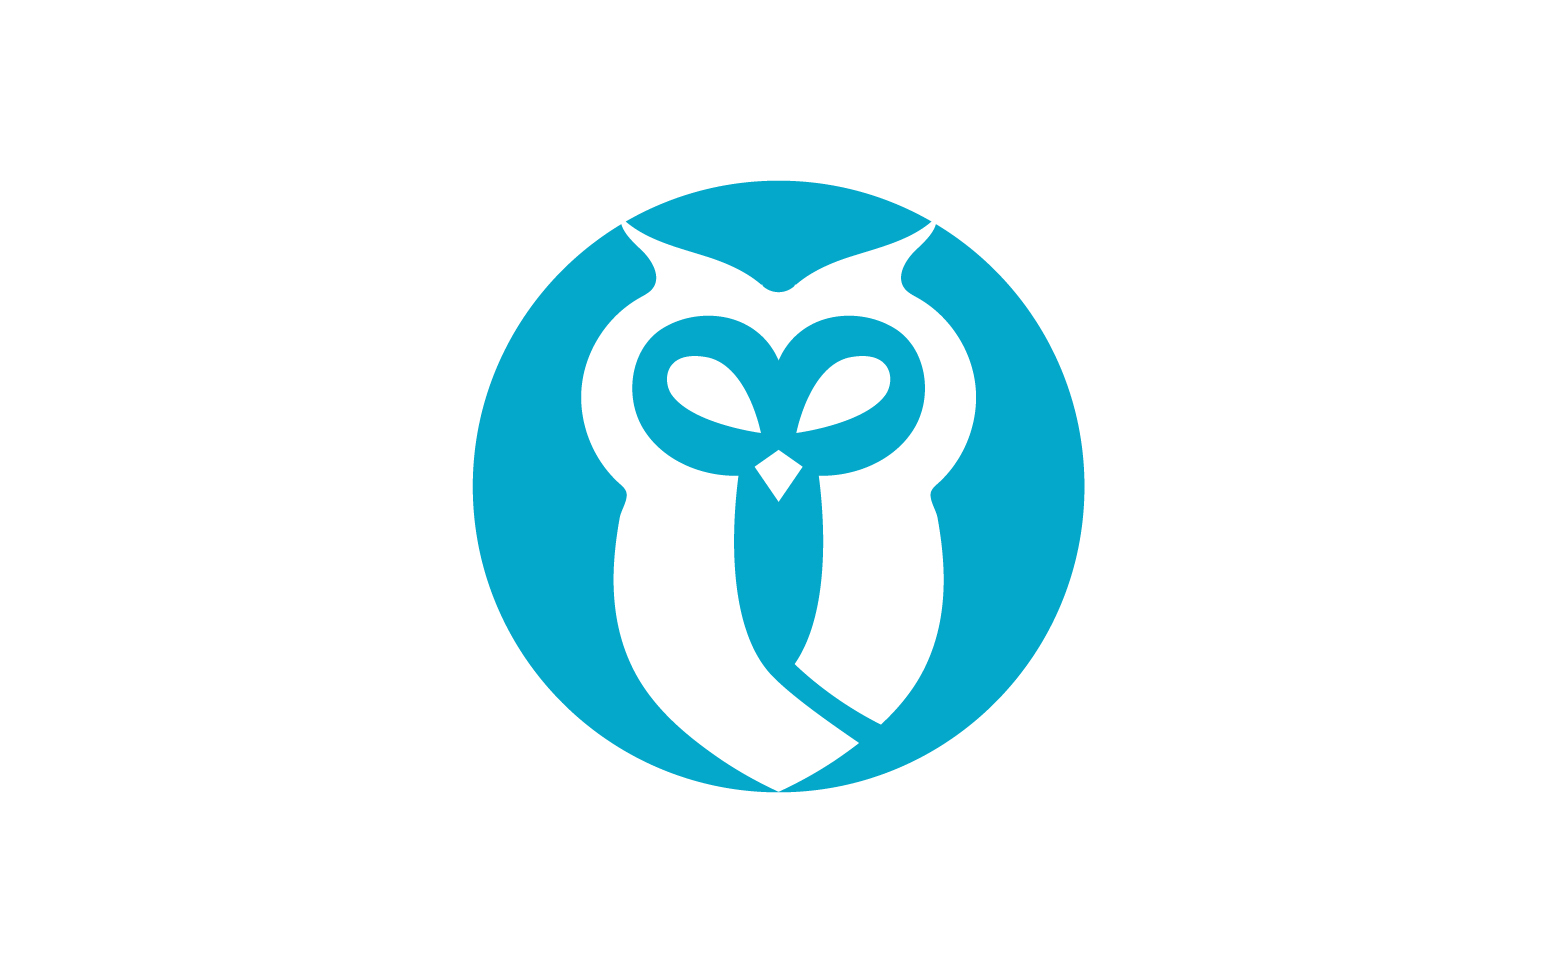 Owl head bird logo template vector v14